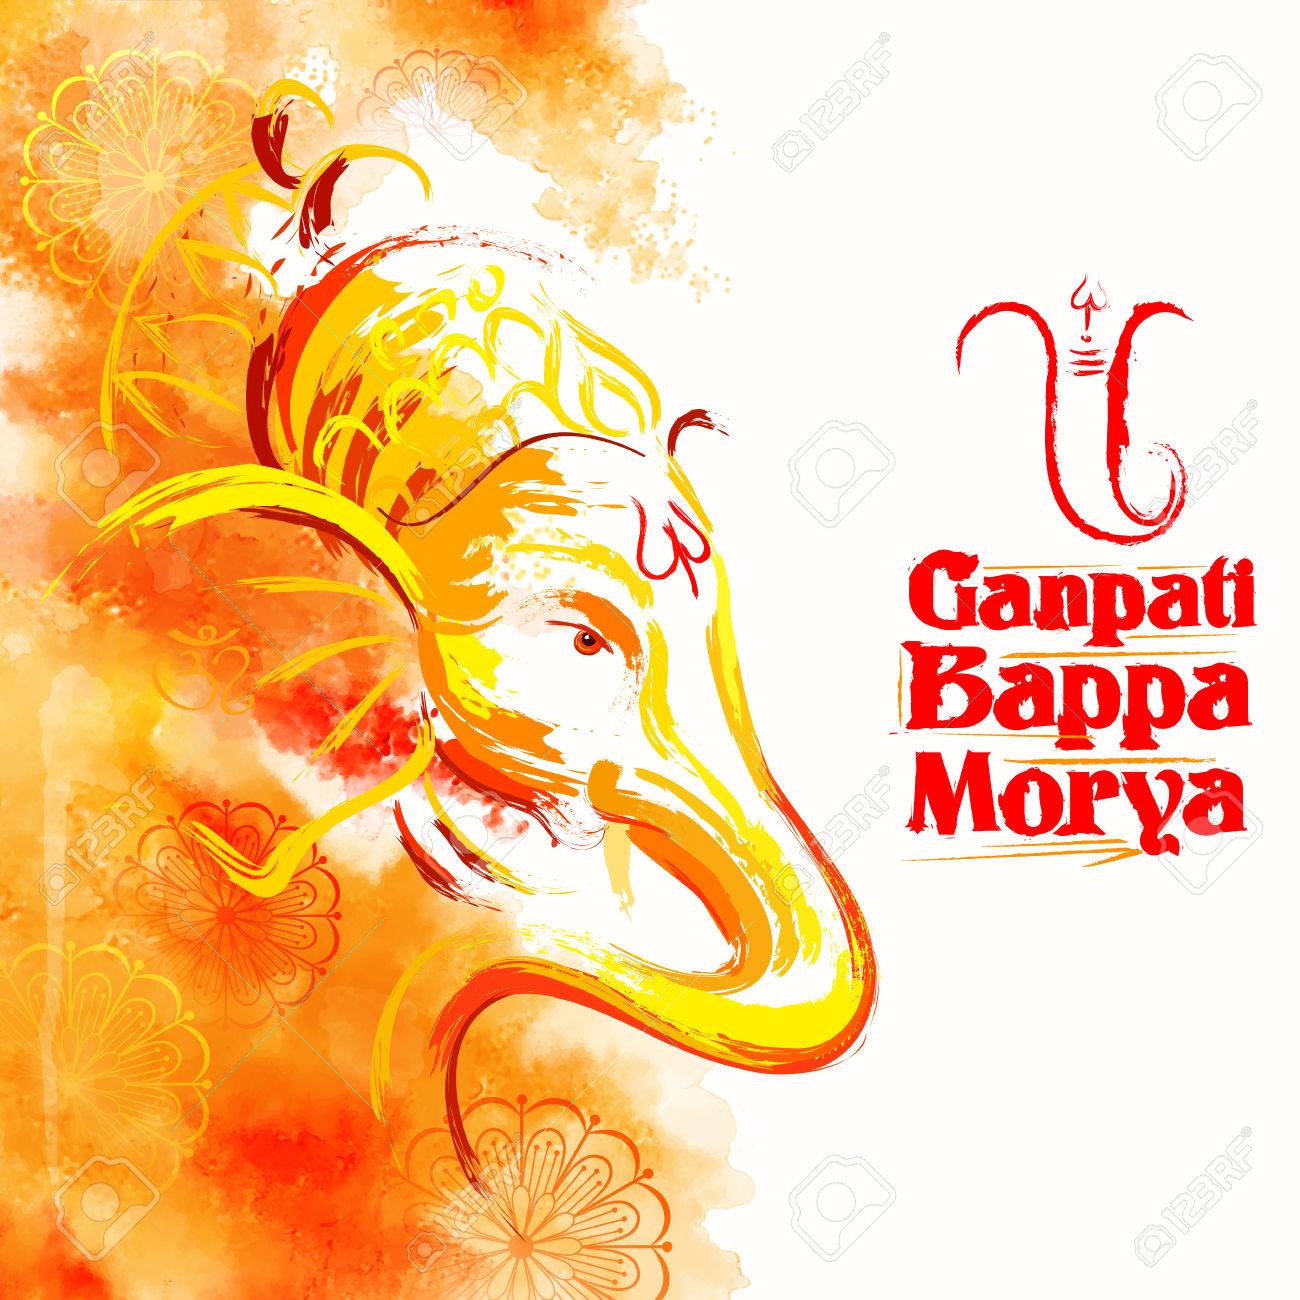 Best Collection of 999+ Incredible Ganpati Bappa Morya Images in Full ...